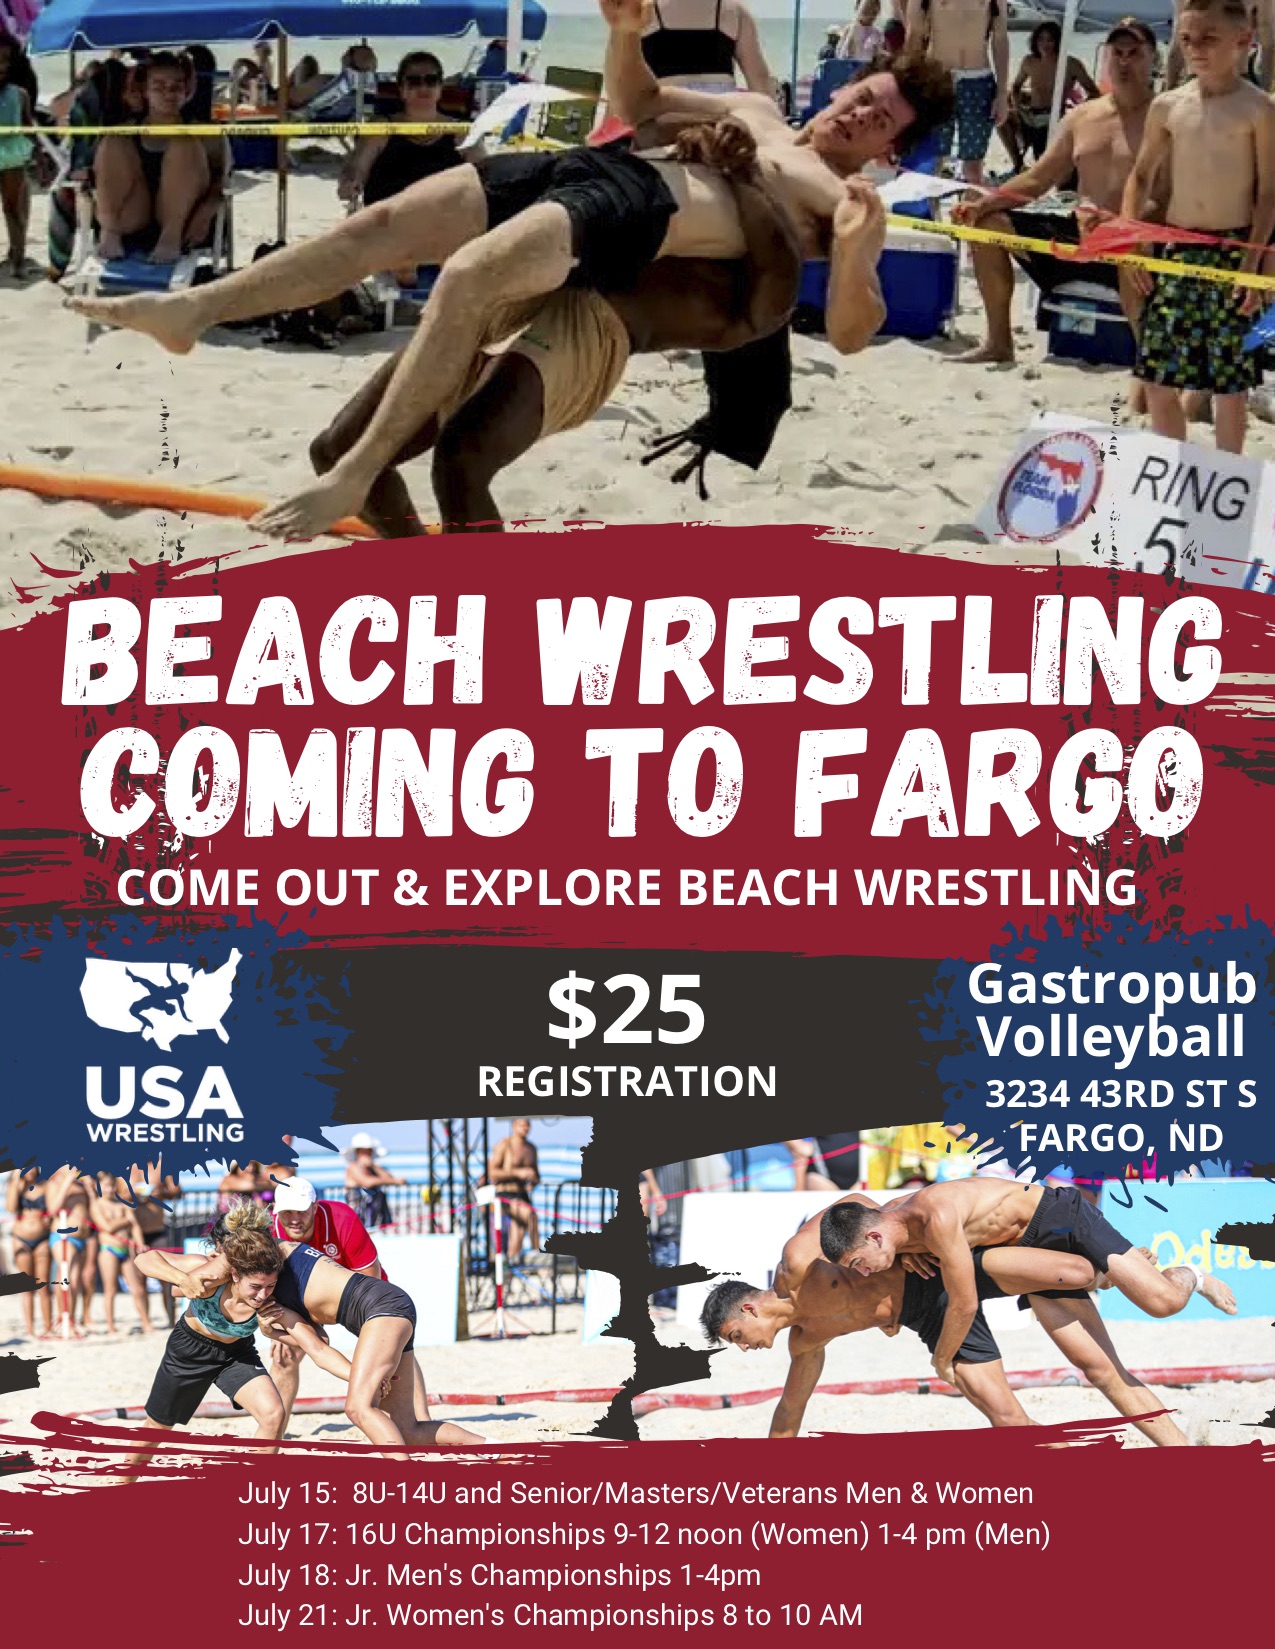 FARGO BOUND! USA Beach Wrestling